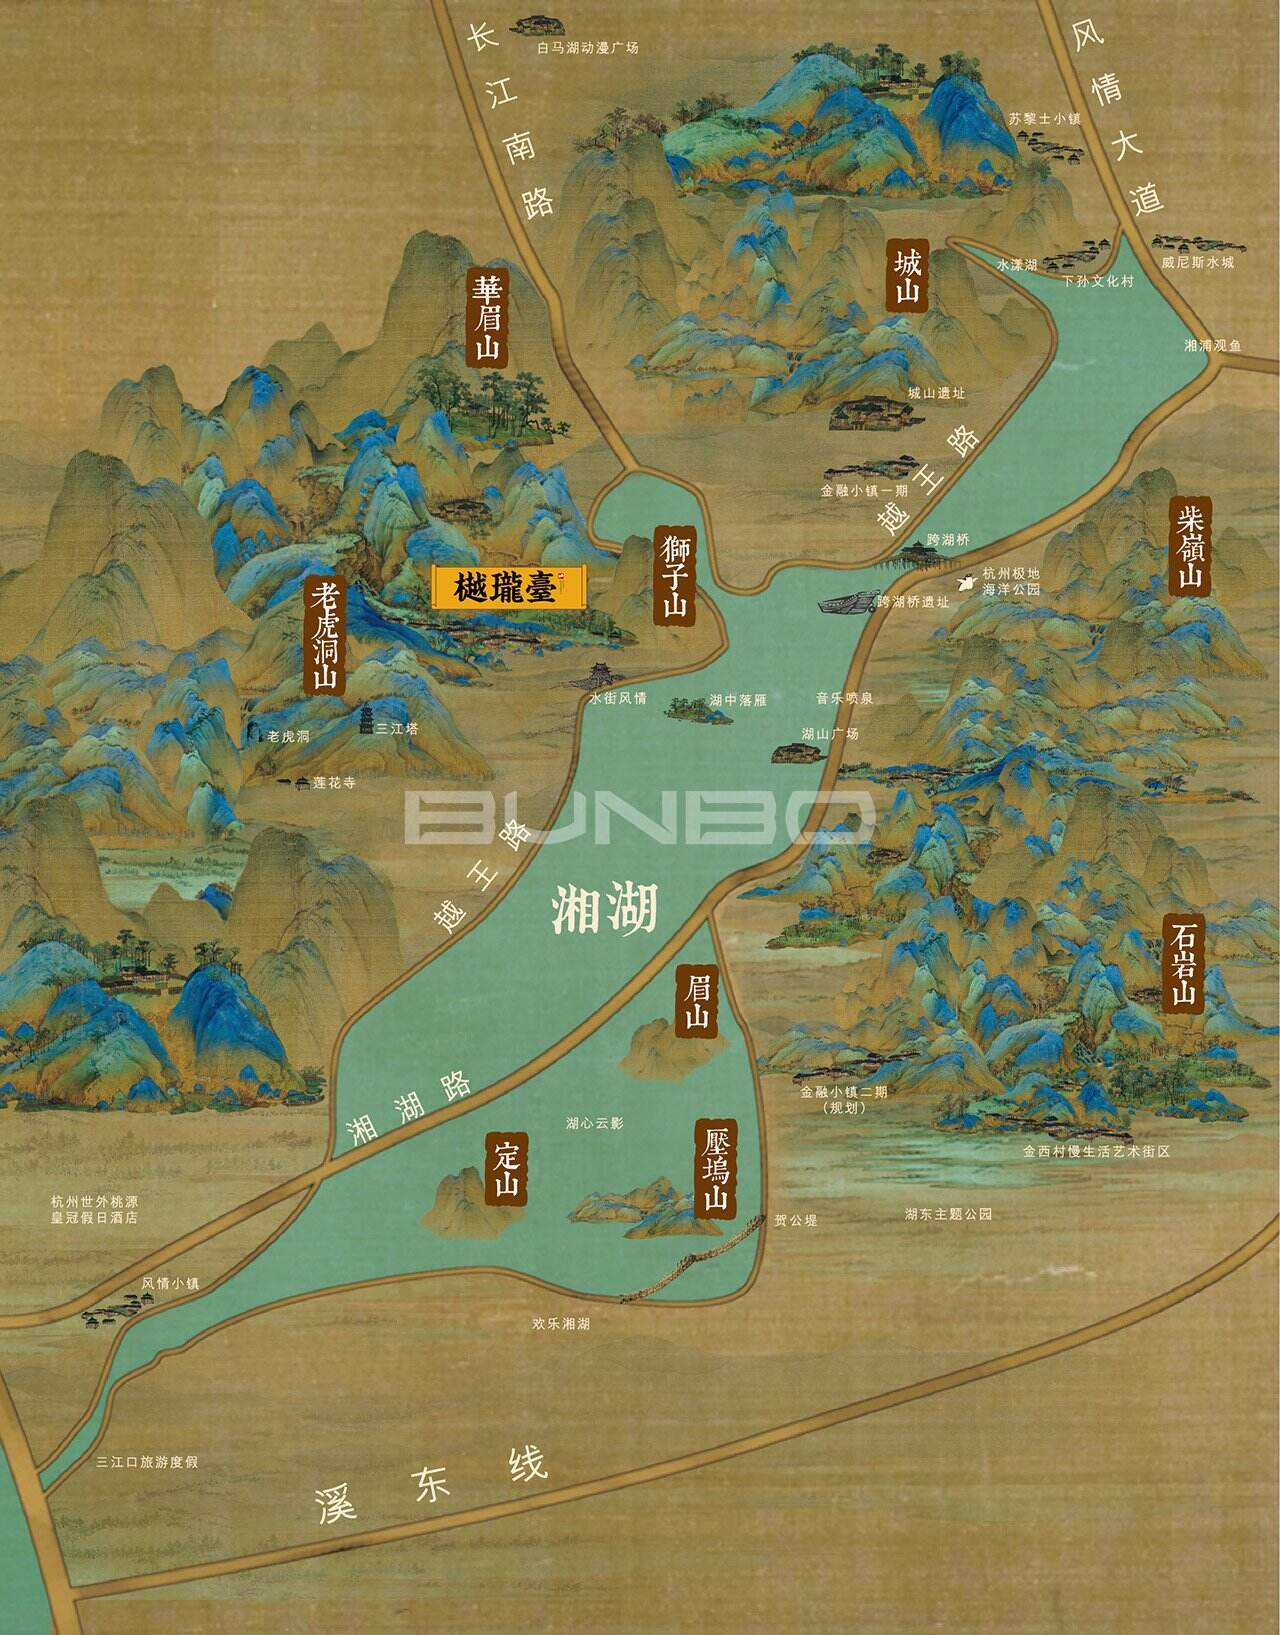 湘湖风景区手绘风格地图